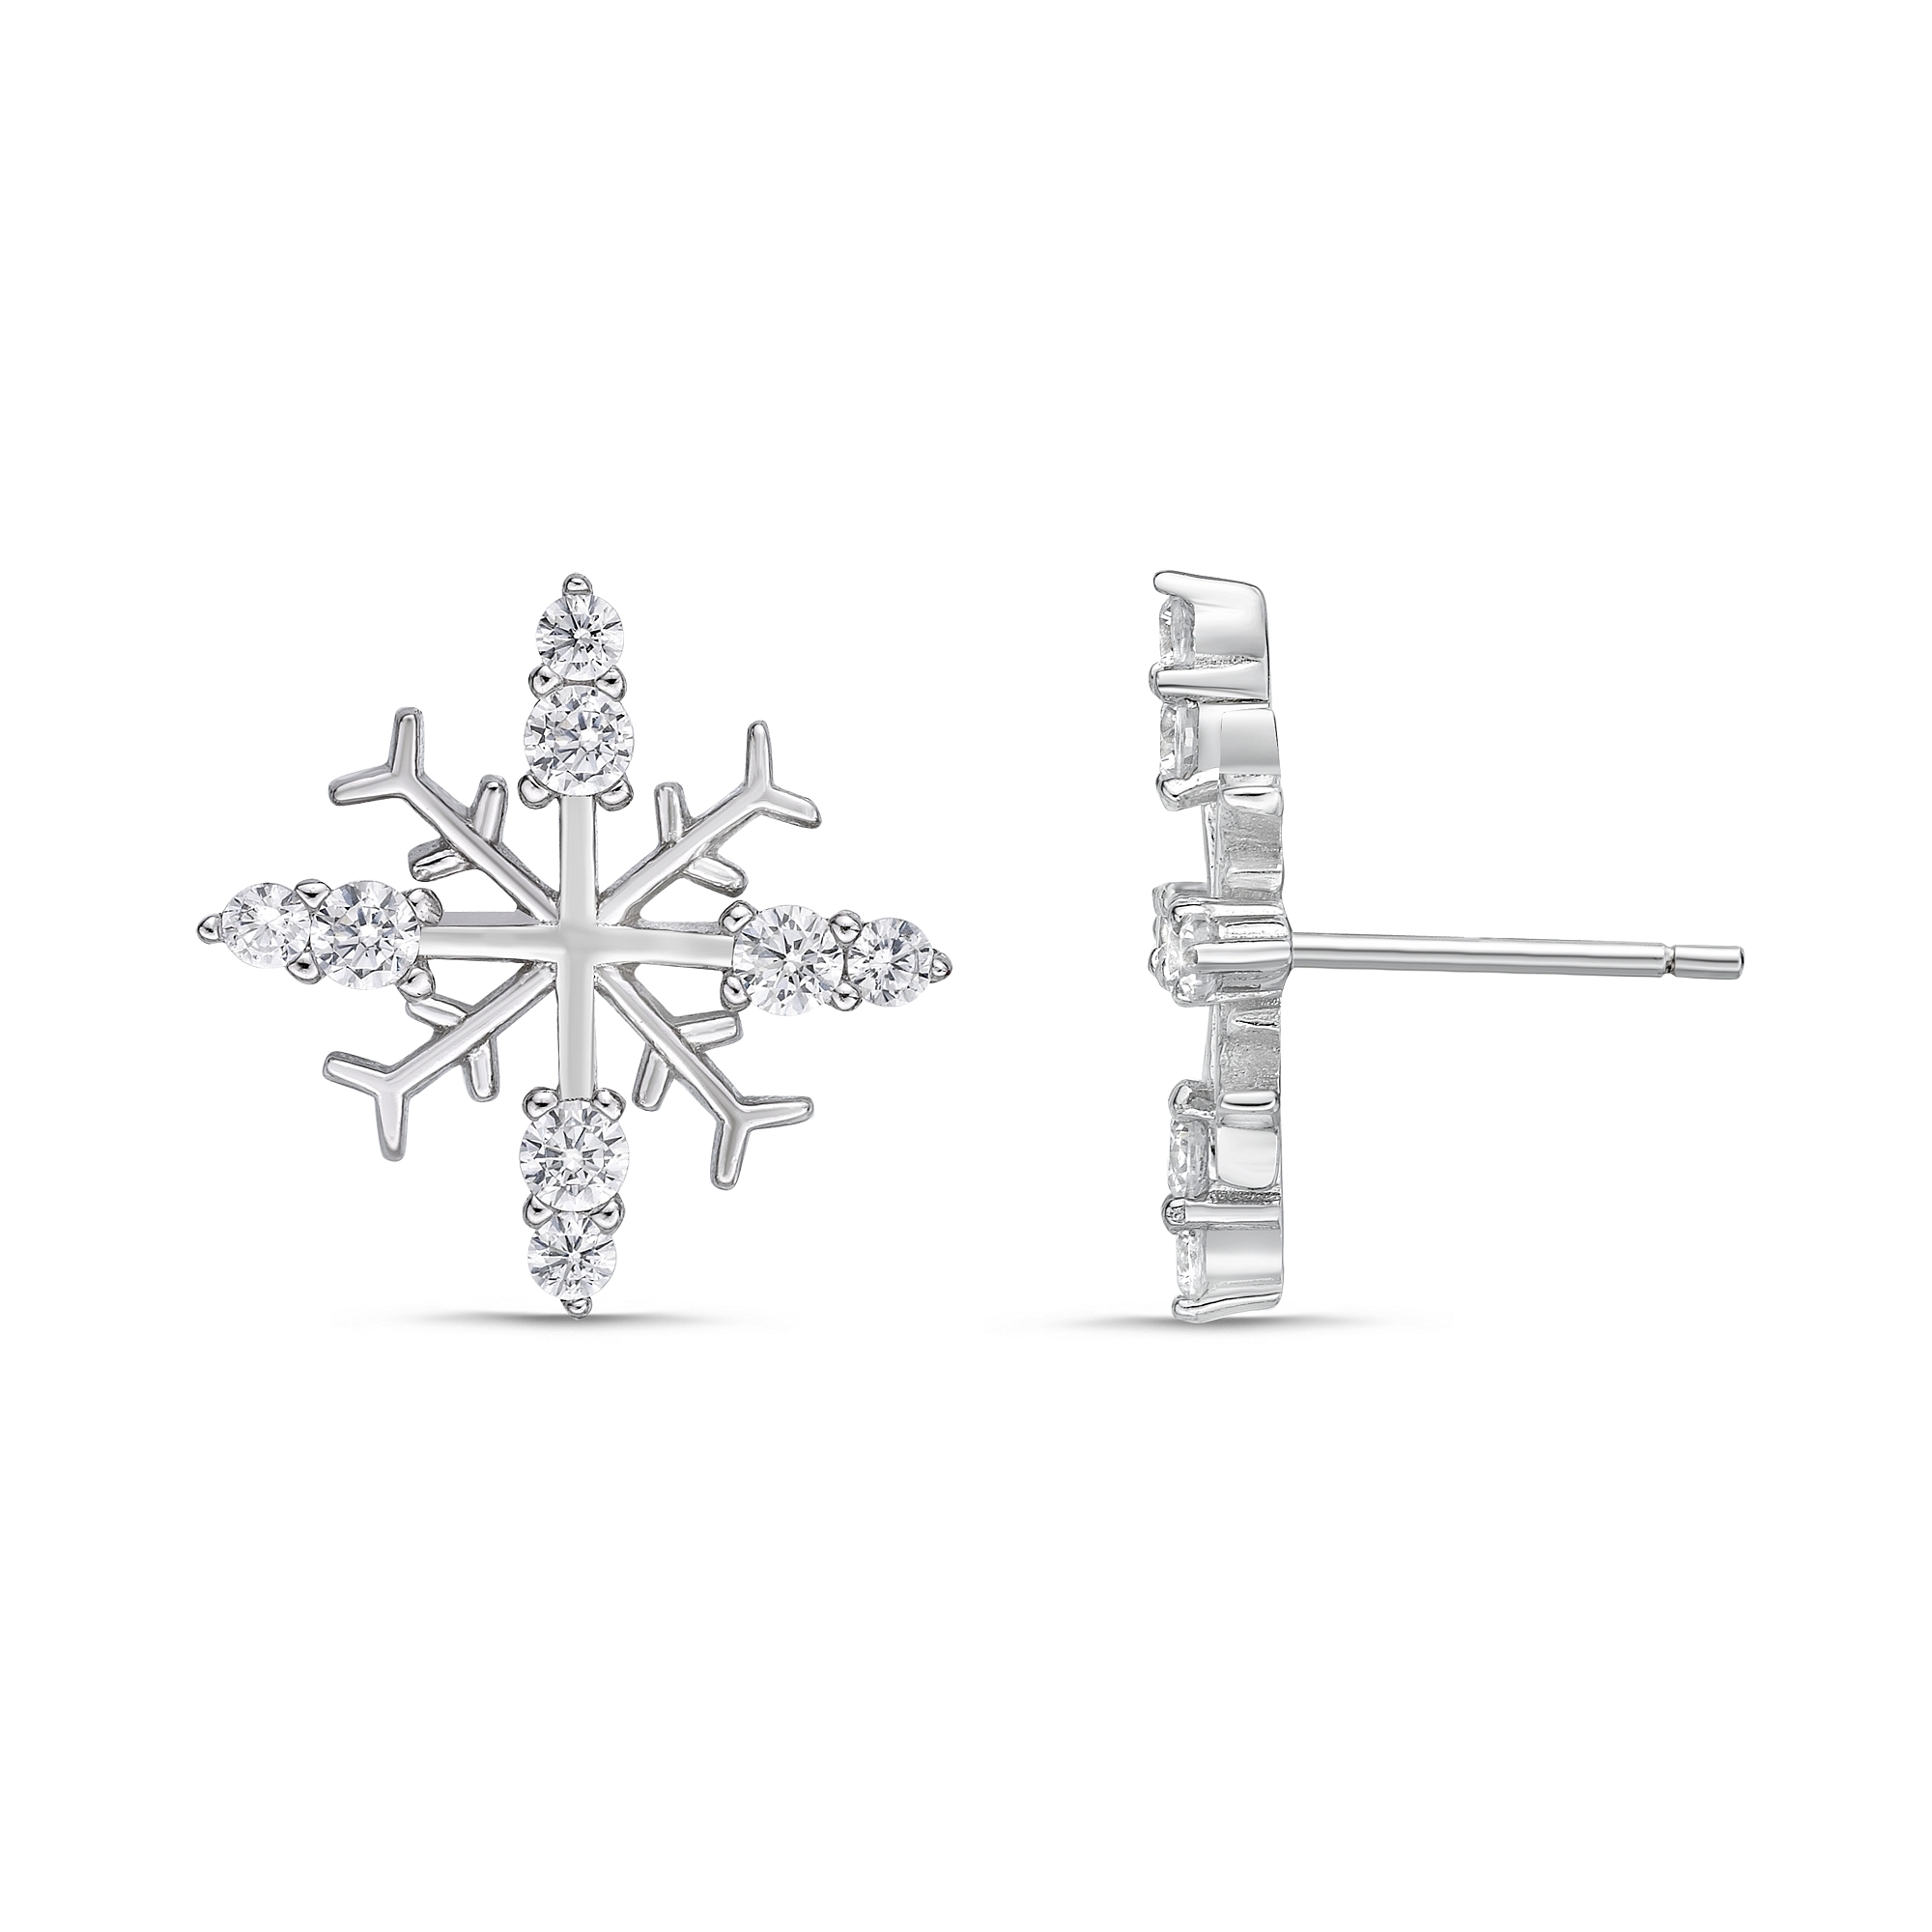 49171-earrings-cubic-zirconia-silver-6.jpg